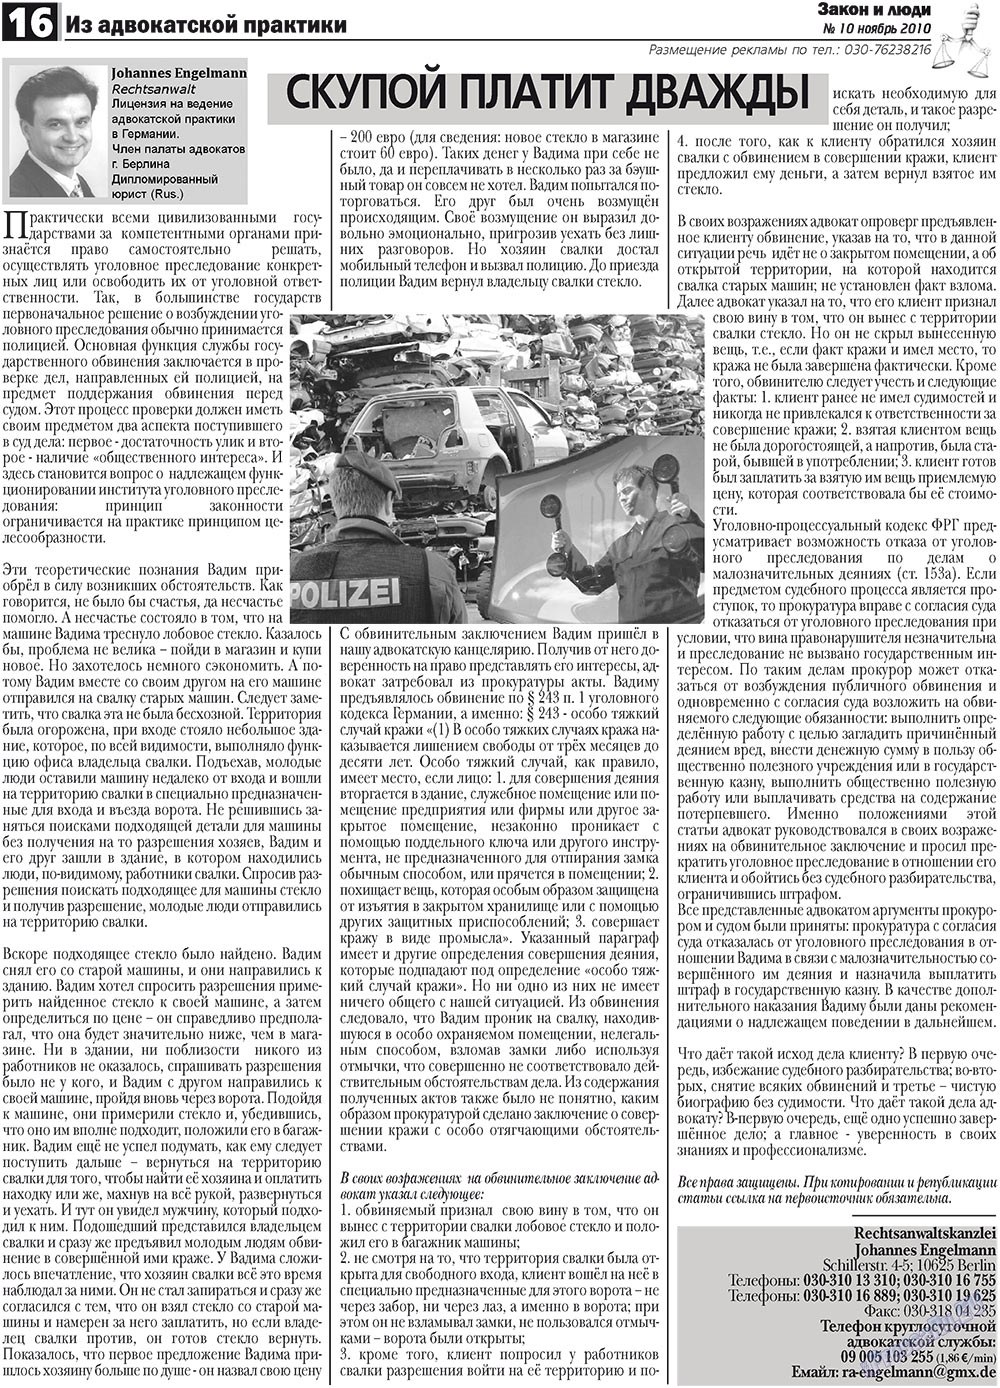 Закон и люди, газета. 2010 №10 стр.16